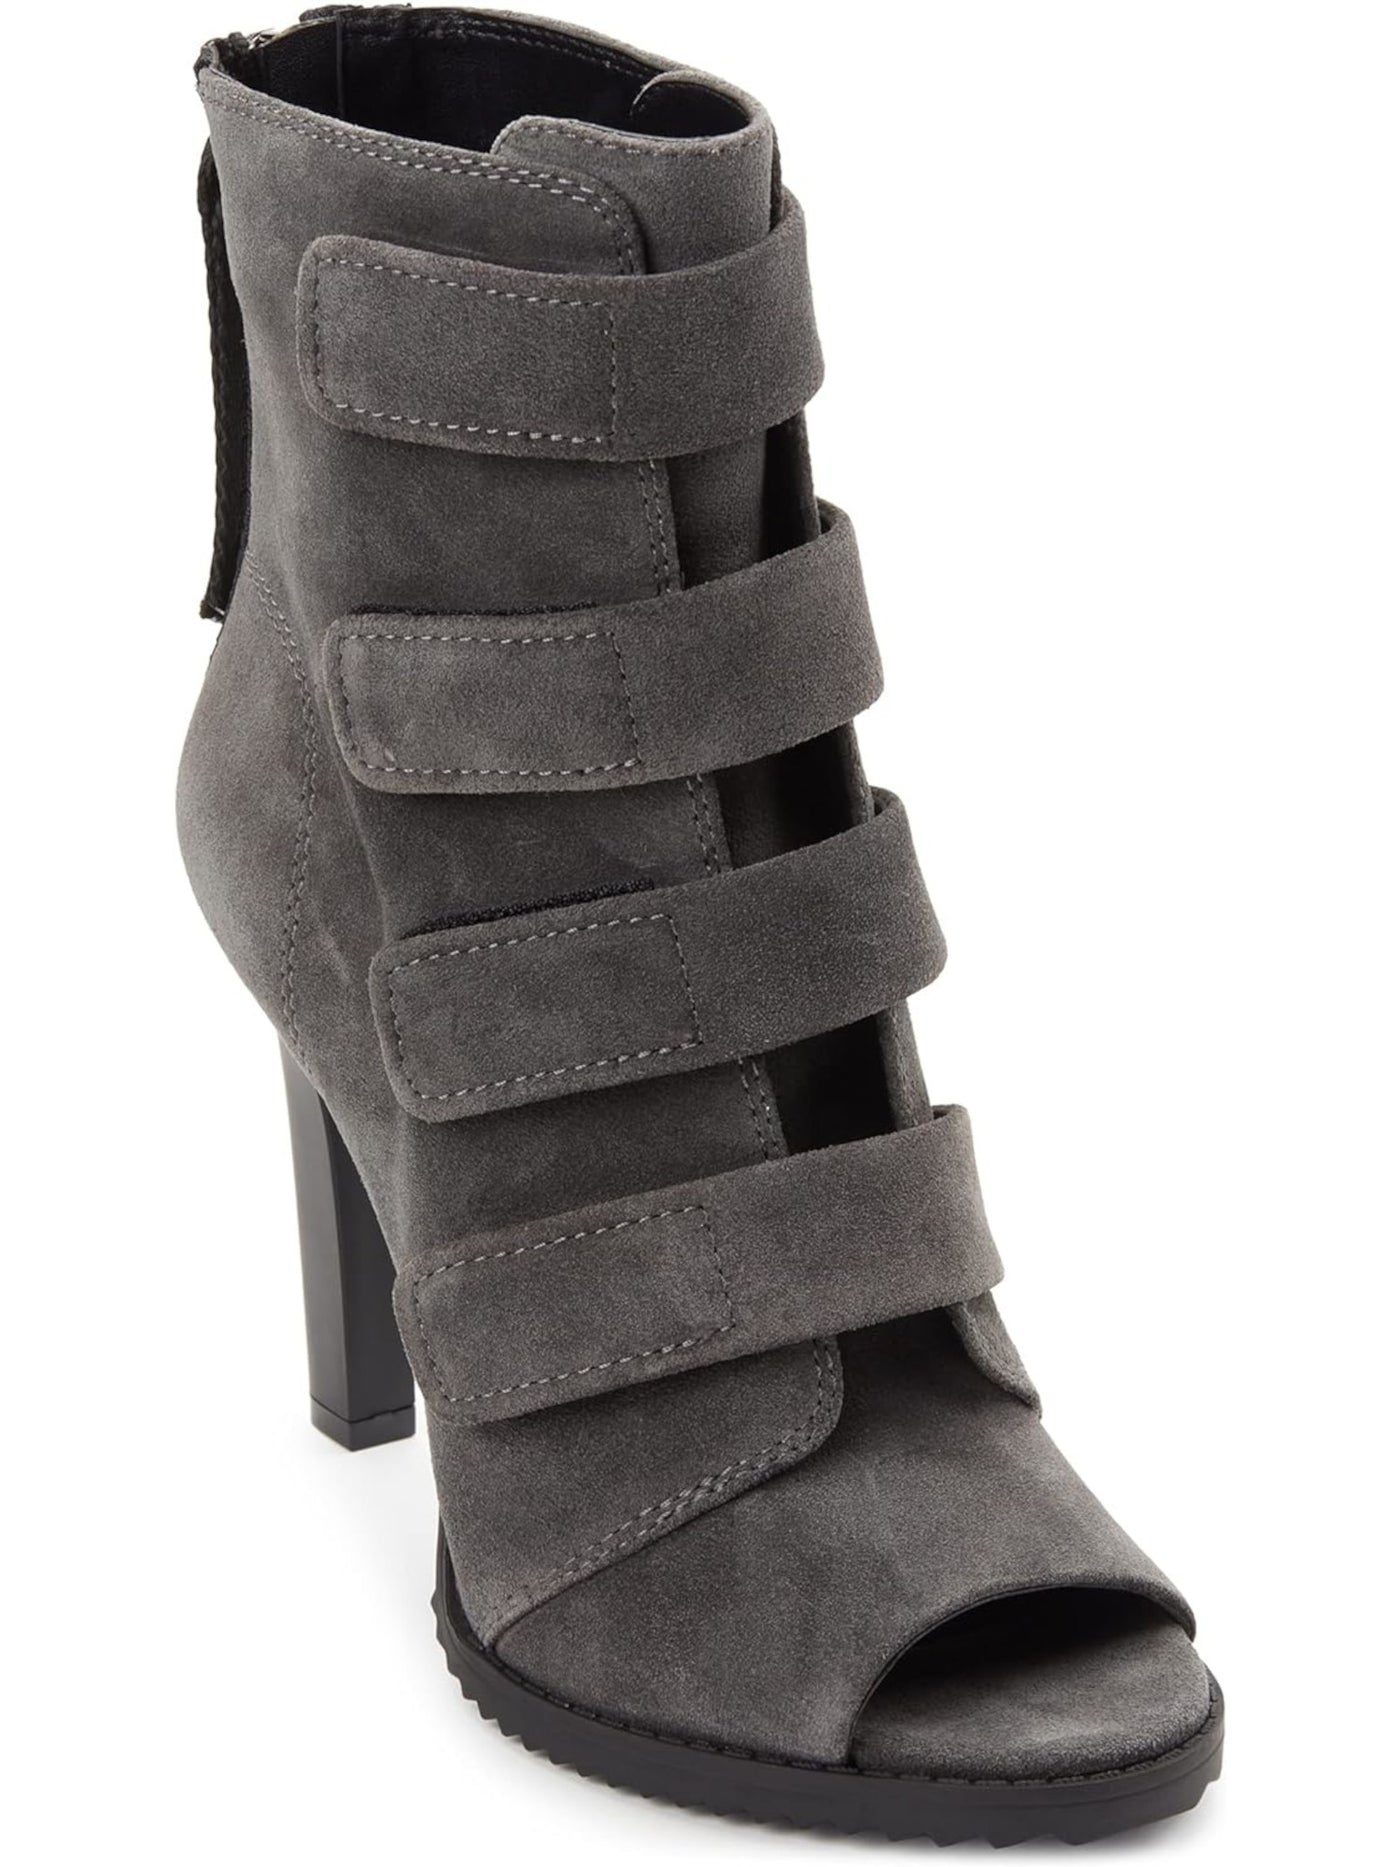 DKNY Womens Gray Hook & Loop Straps Padded Tasseled Logo Blake Peep Toe Block Heel Zip-Up Suede Booties 6 M